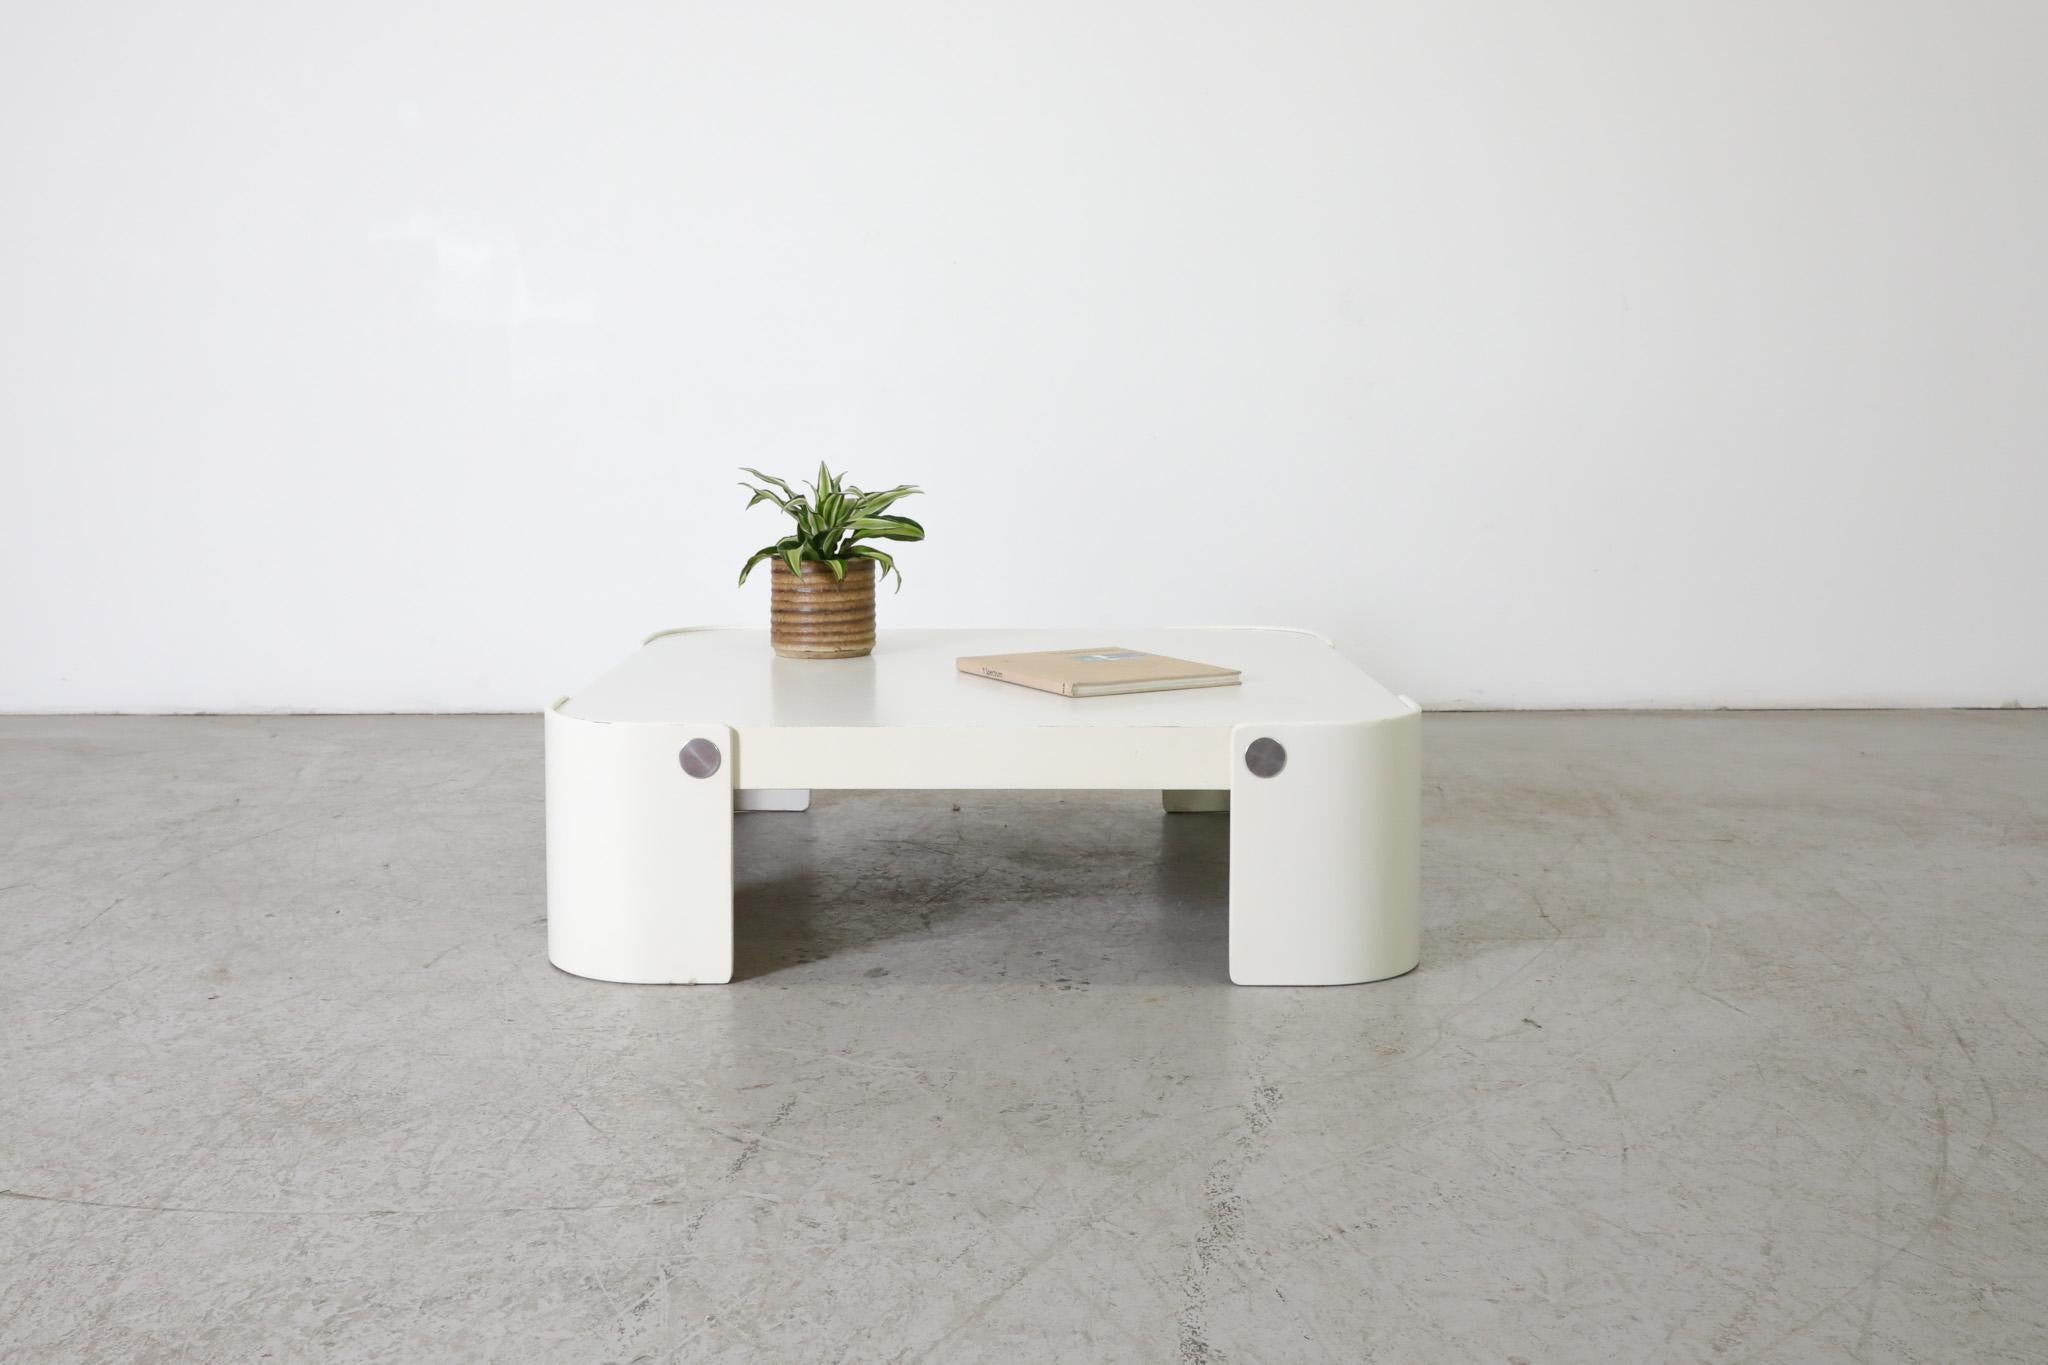 Table basse de la série Mod 'Trinum' par Peter Maly pour CORS, années 1970. Table élégante en stratifié avec pieds courbés en bois courbé et boutons chromés. Le design minimaliste bien exécuté complète son apparence entièrement blanche, ce qui